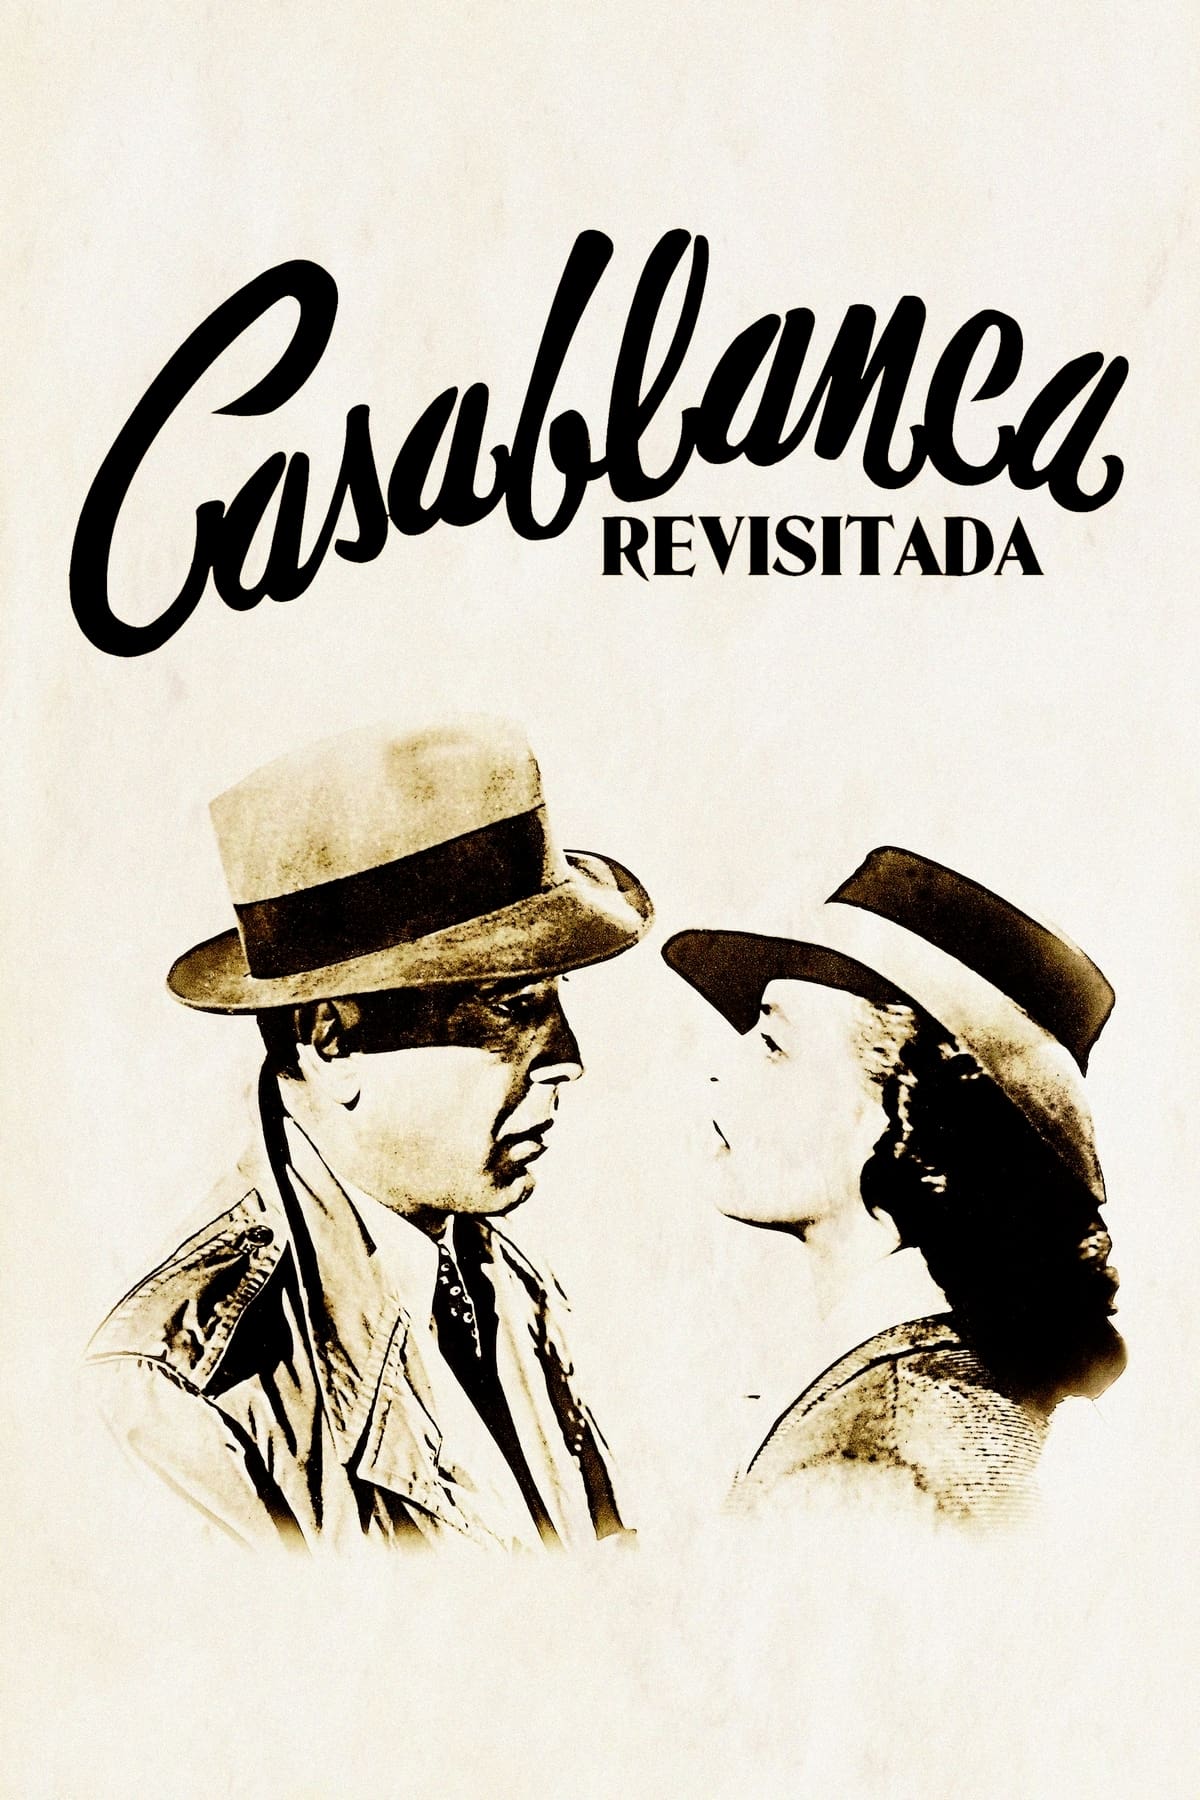 Casablanca revisitada